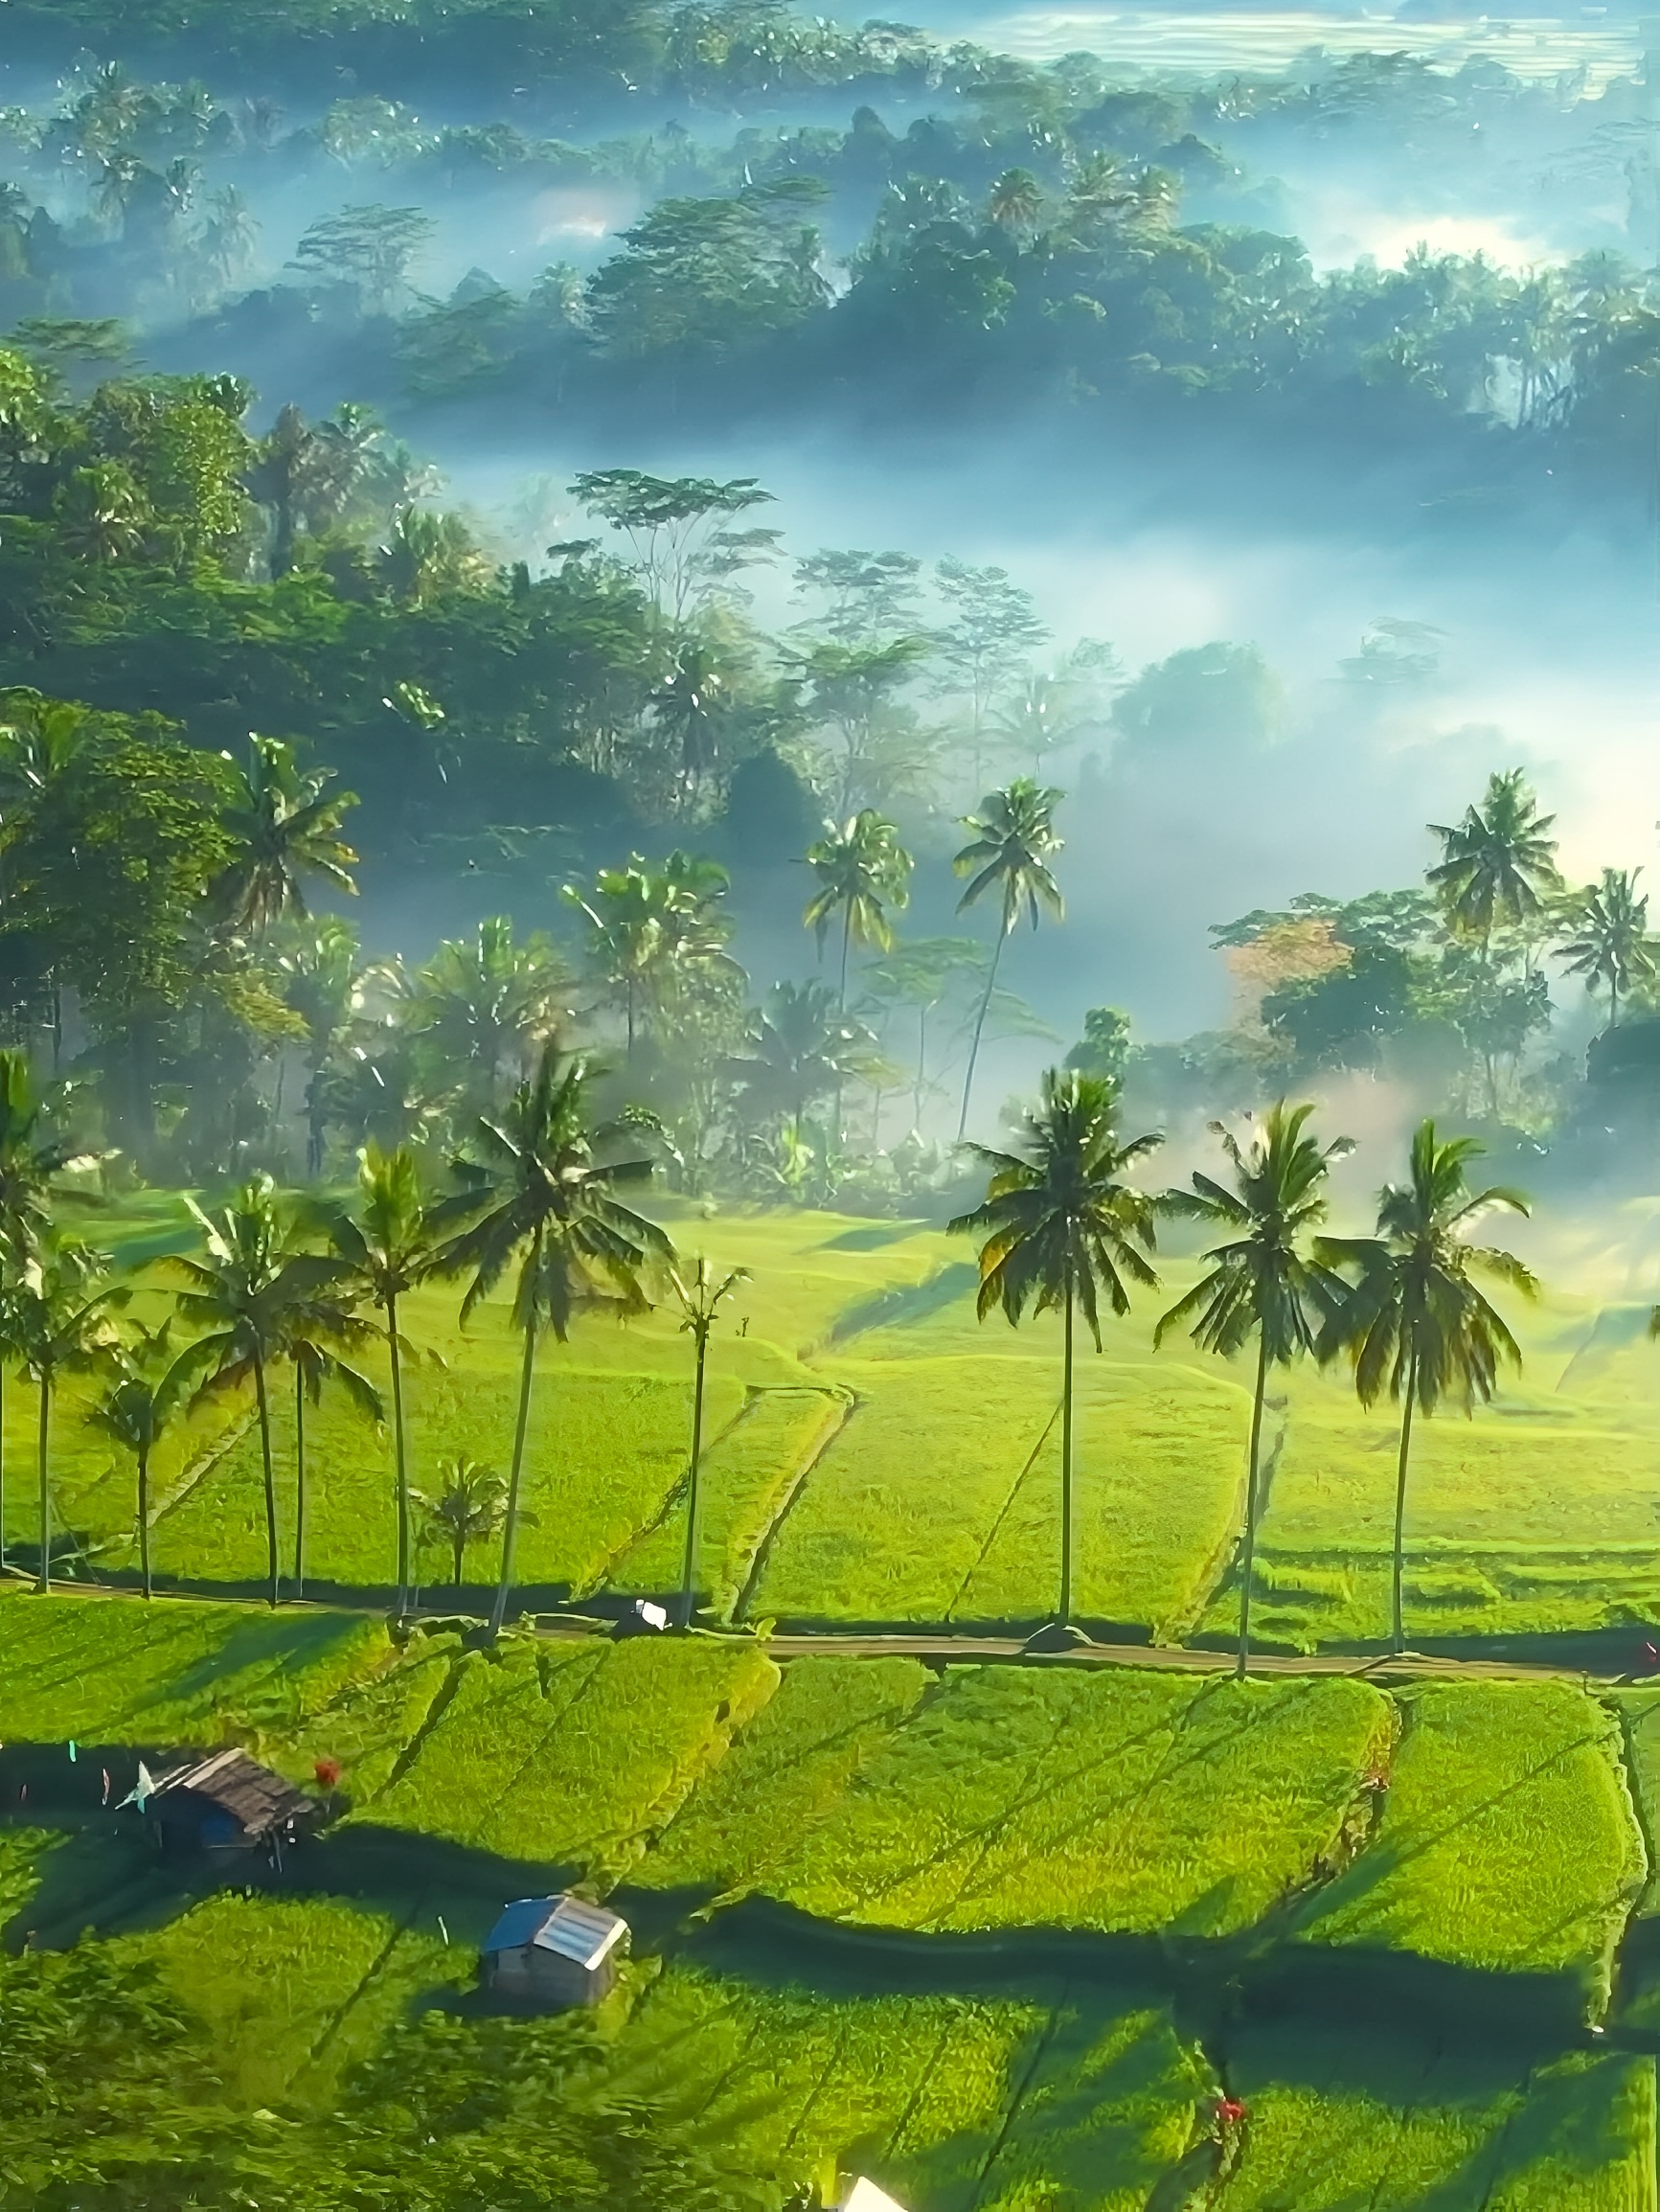 巴厘岛稻田踏春赏景的好去处